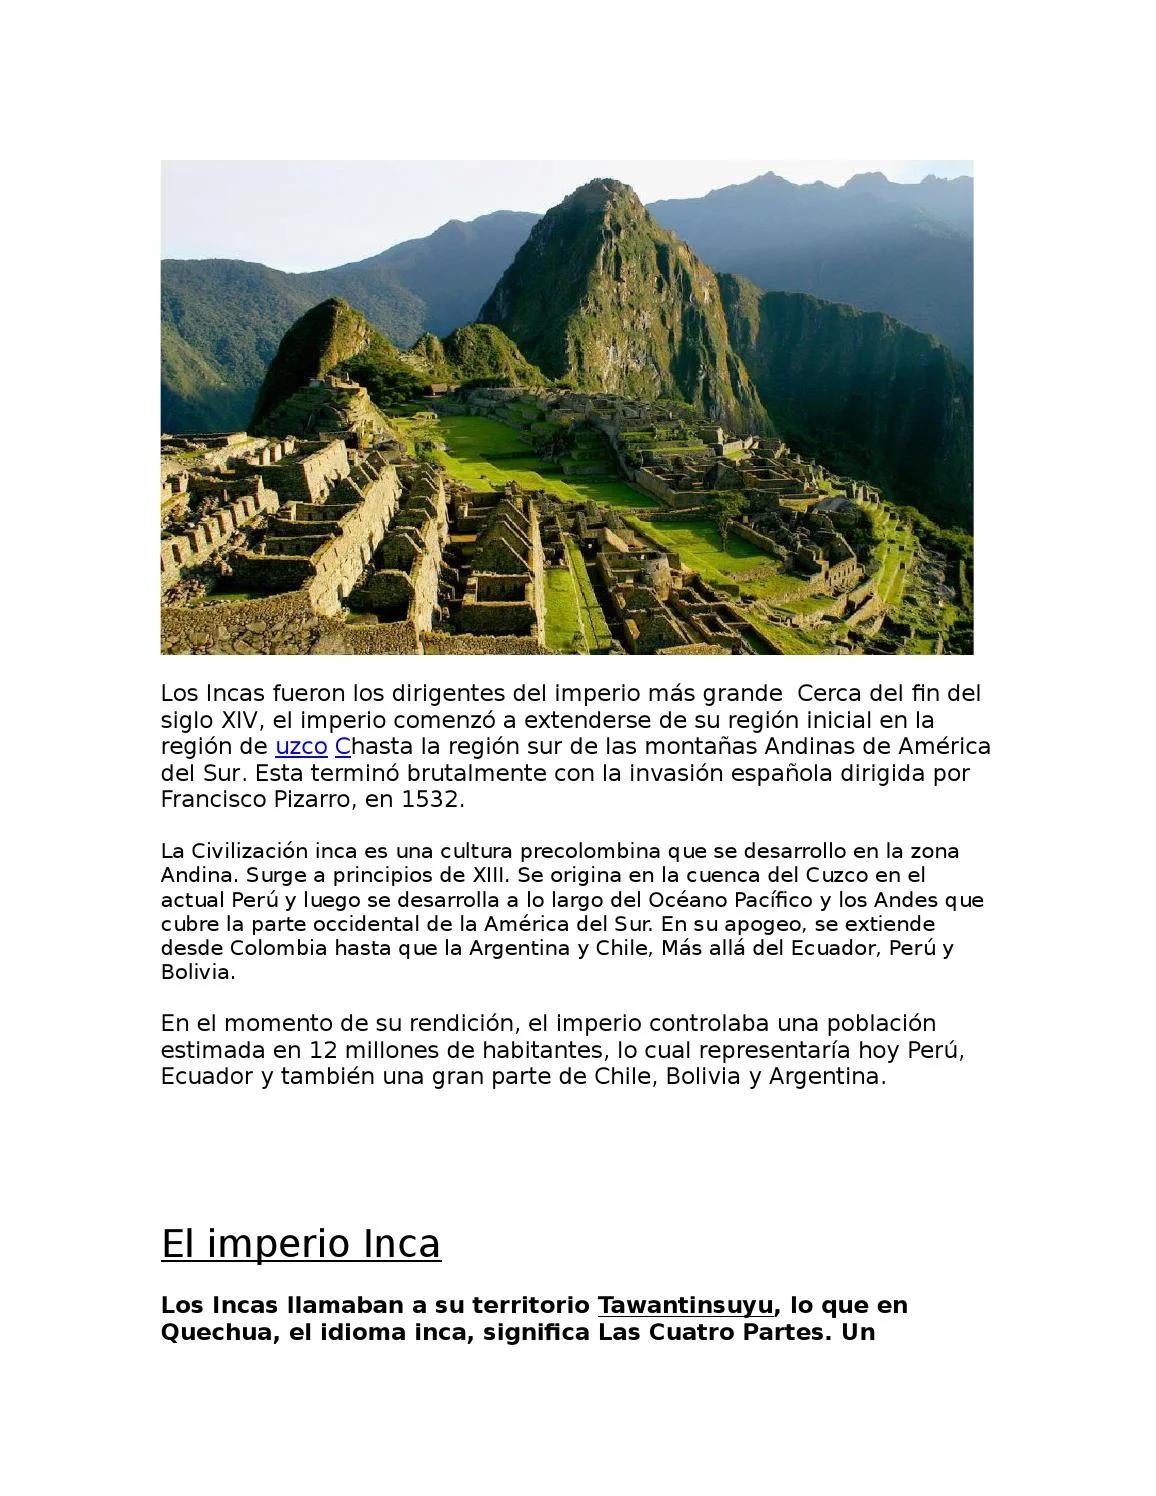 desarrollo cultural de los incas resumen - Qué es la cultura inca resumen